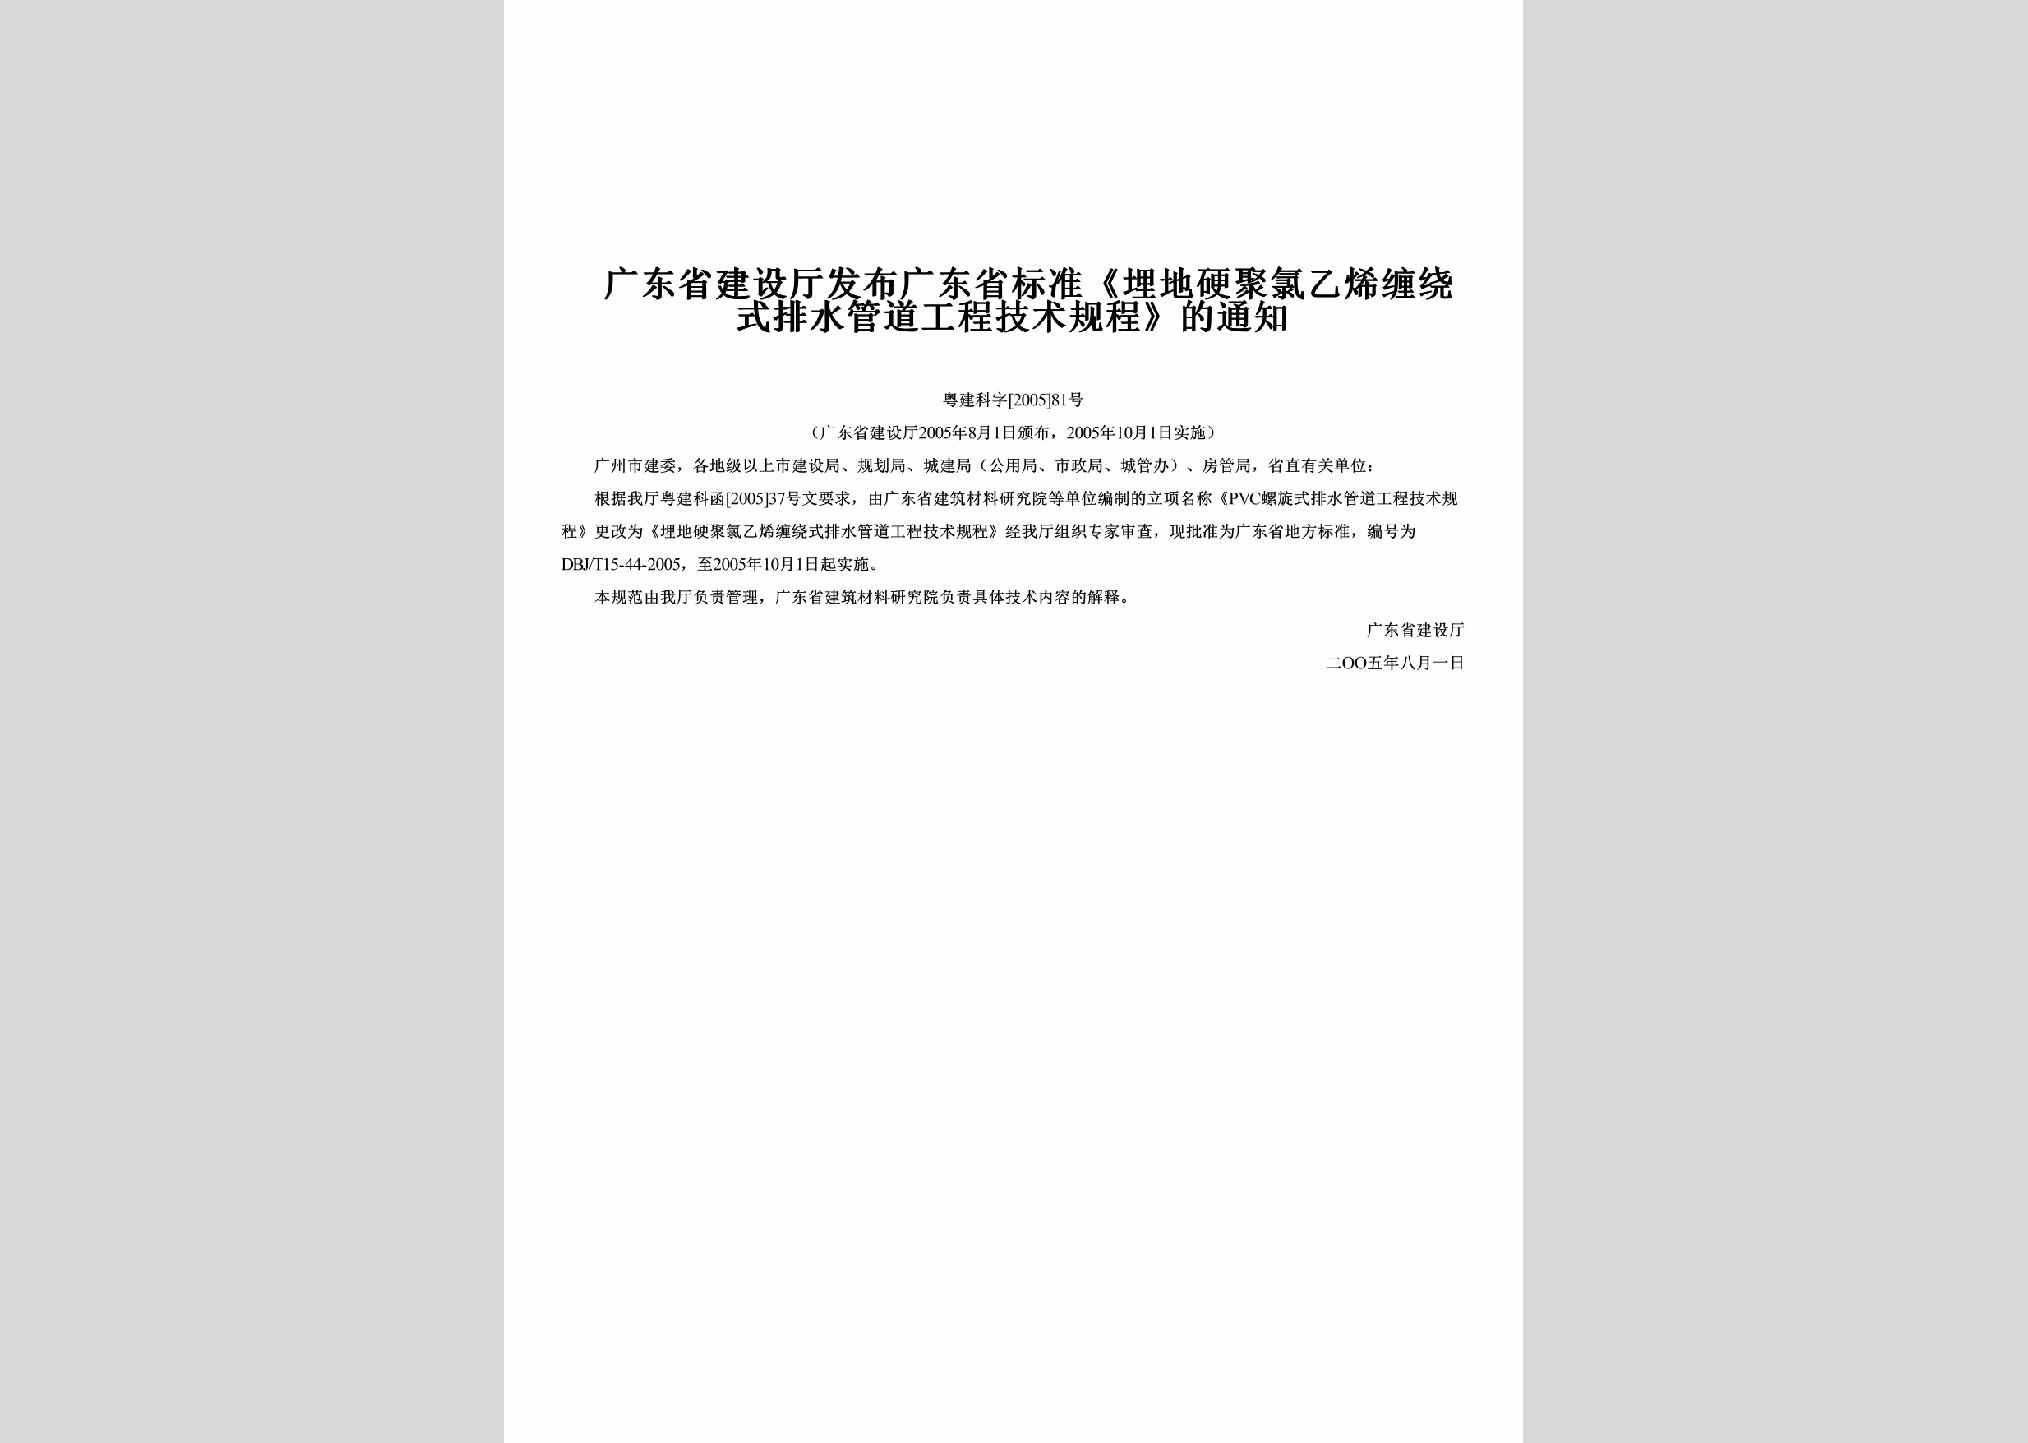 粤建科字[2005]81号：发布广东省标准《埋地硬聚氯乙烯缠绕式排水管道工程技术规程》的通知